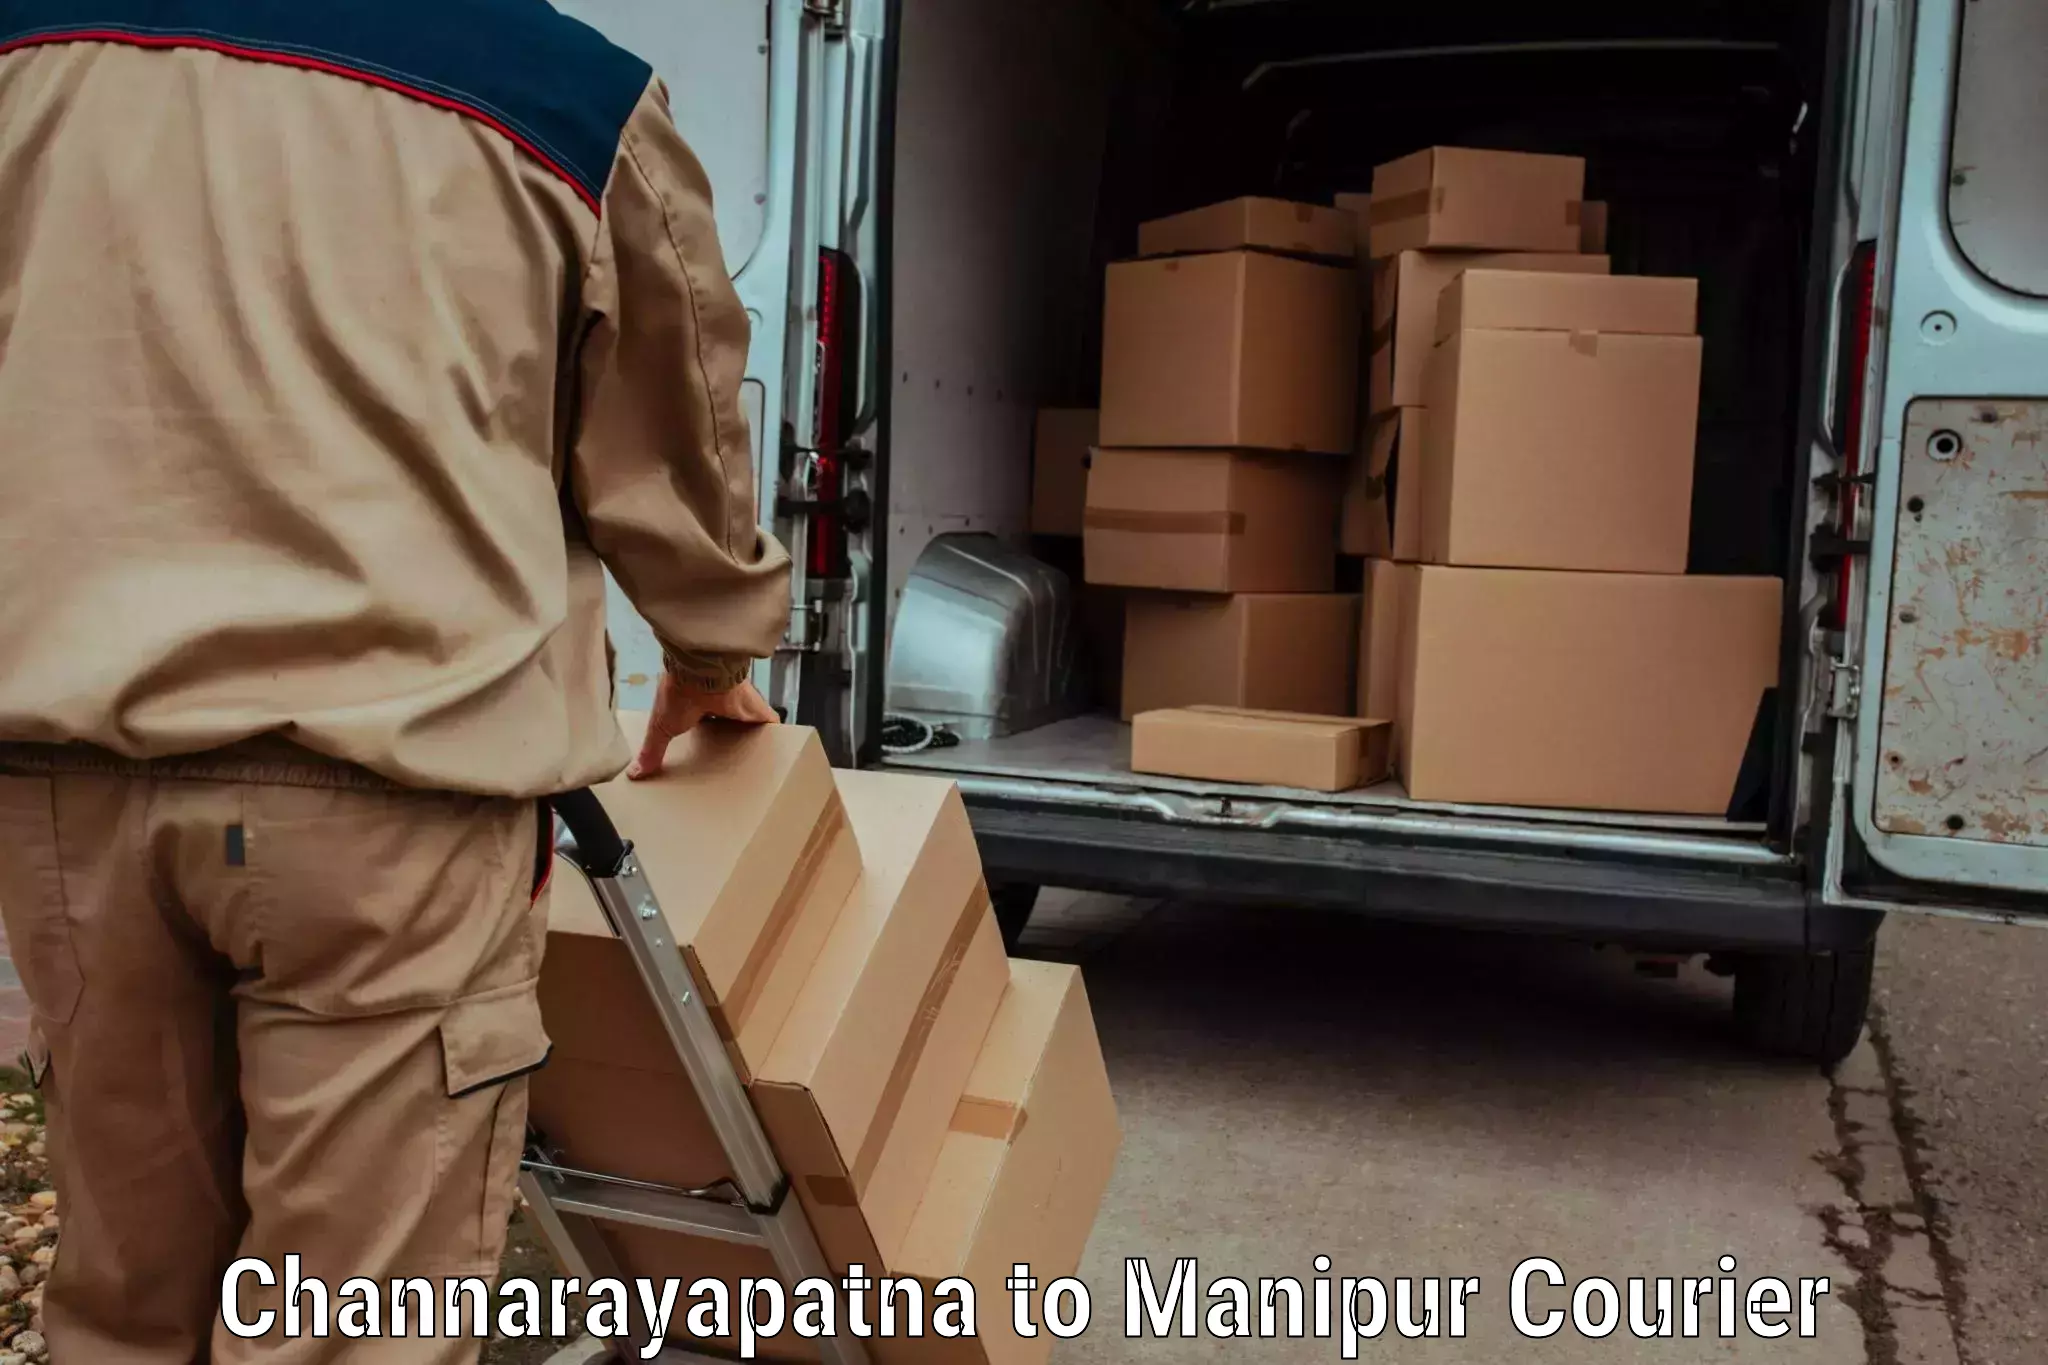 Courier service booking Channarayapatna to Senapati